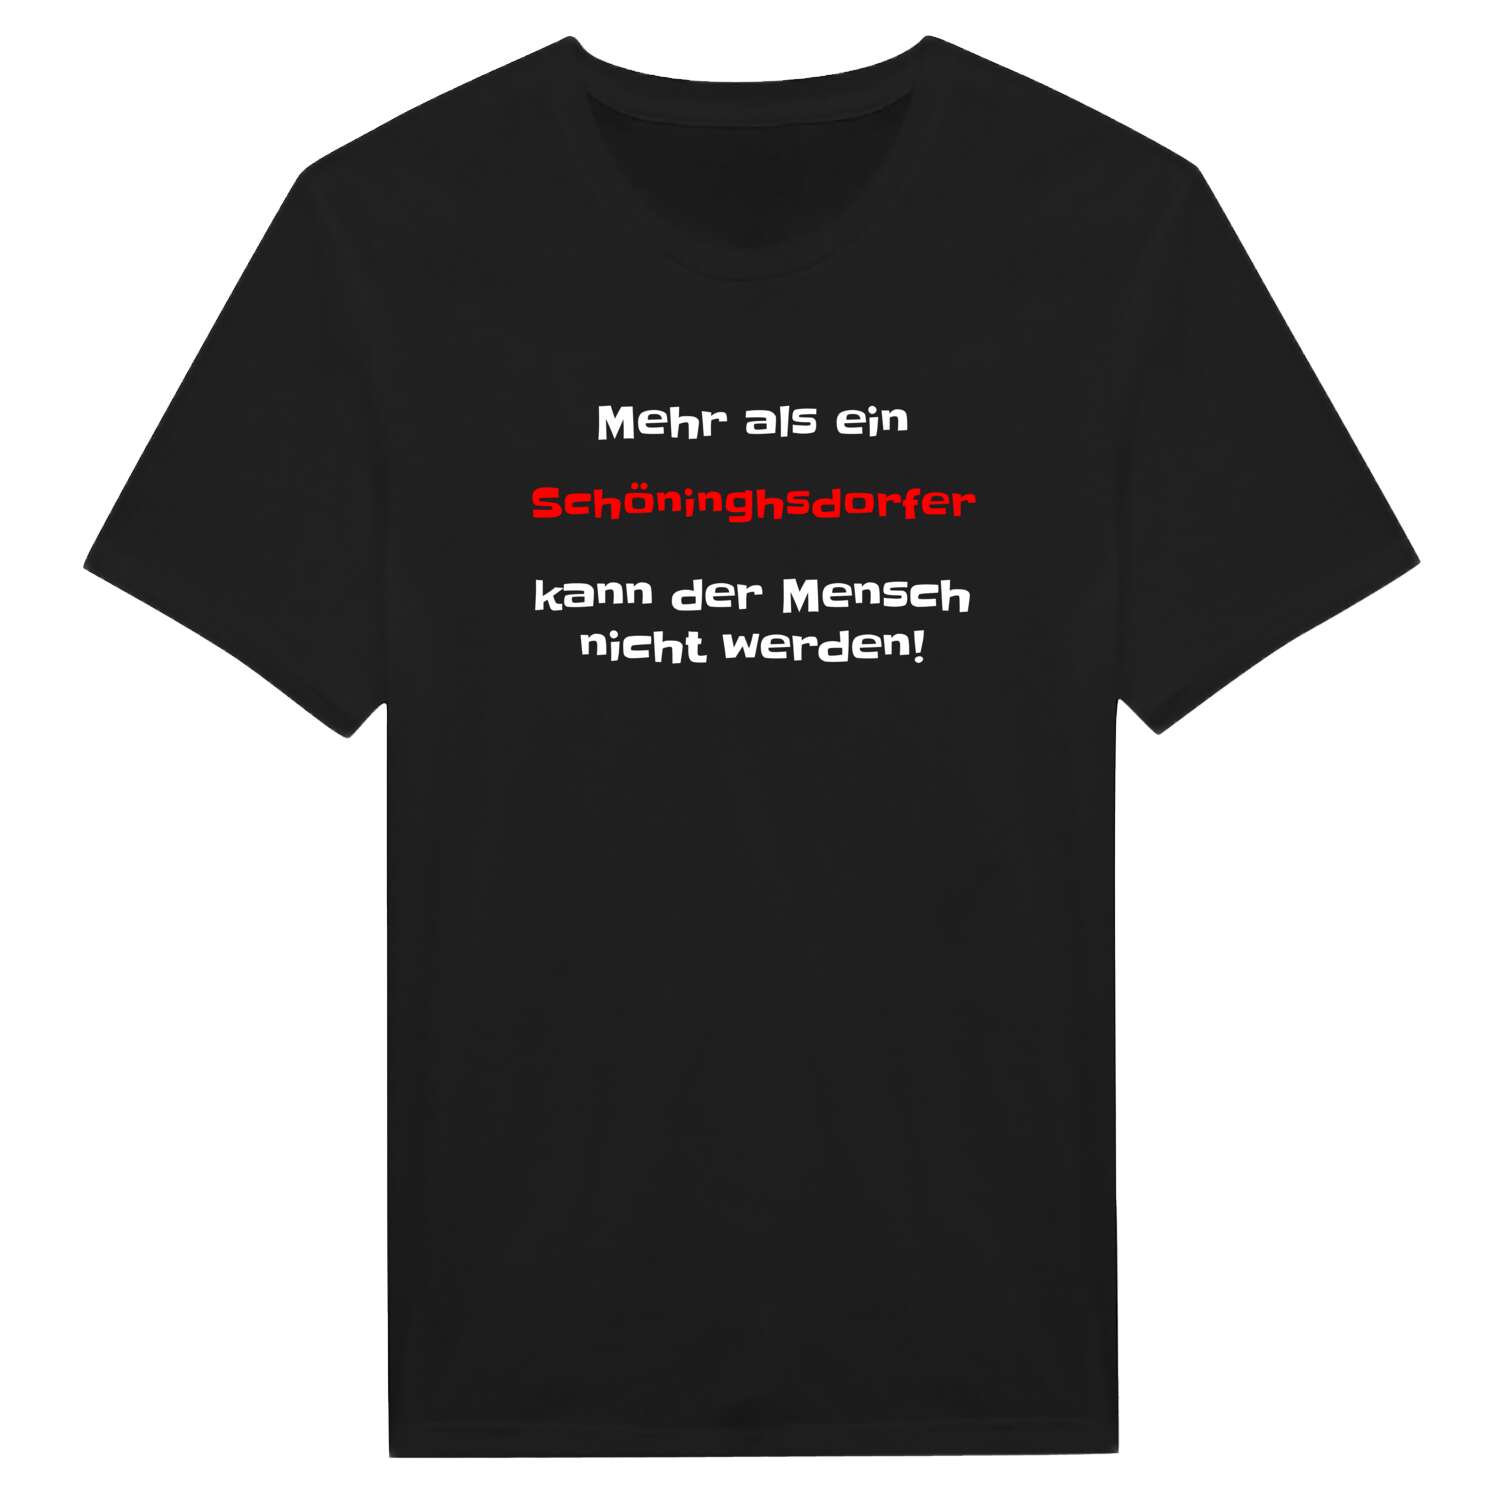 Schöninghsdorf T-Shirt »Mehr als ein«